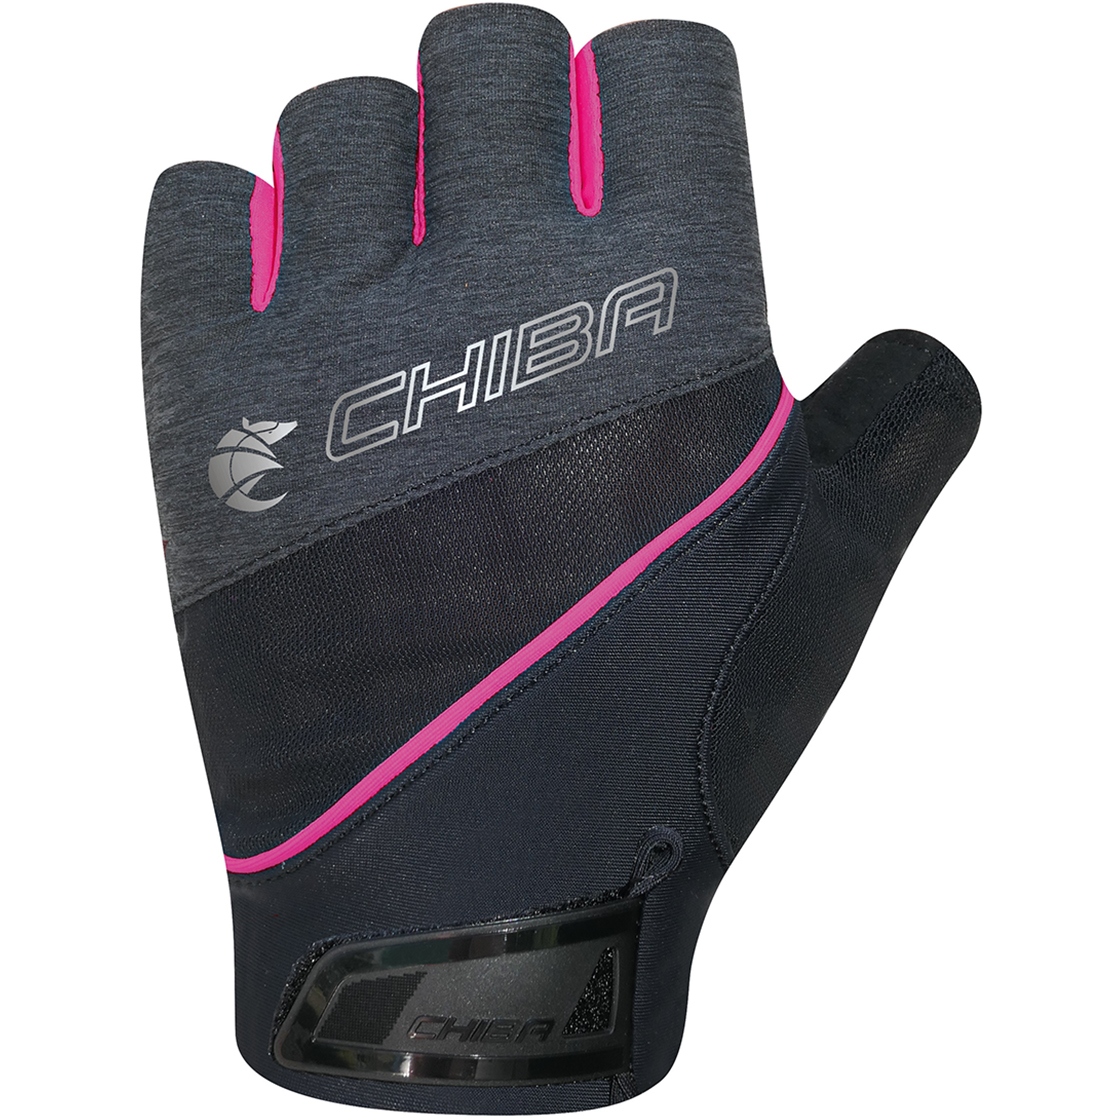 Productfoto van Chiba Gel Premium III Handschoenen met Korte Vingers Dames - zwart/roze